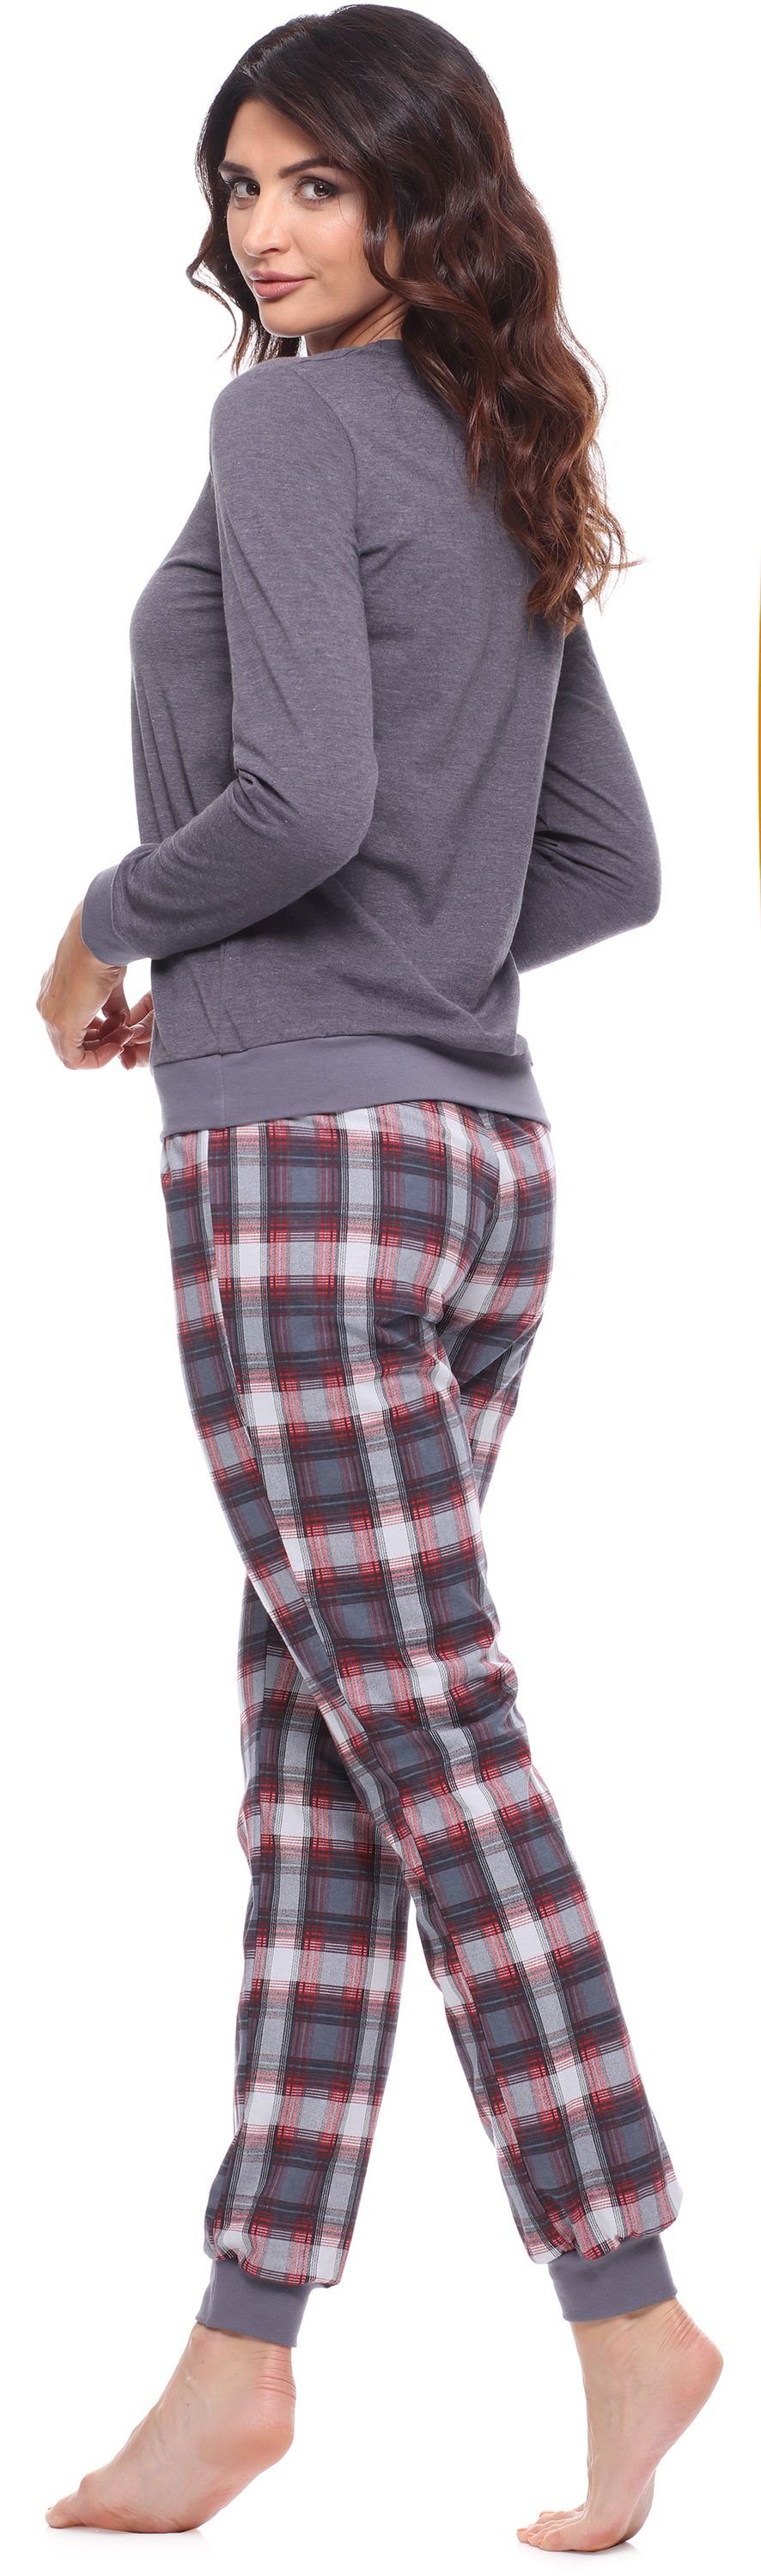 Dunkelmelange/Burgund lang Zweiteiler Muster Pyjama Style Schlafanzug bunt mit Schlafanzug Merry Damen MS10-268